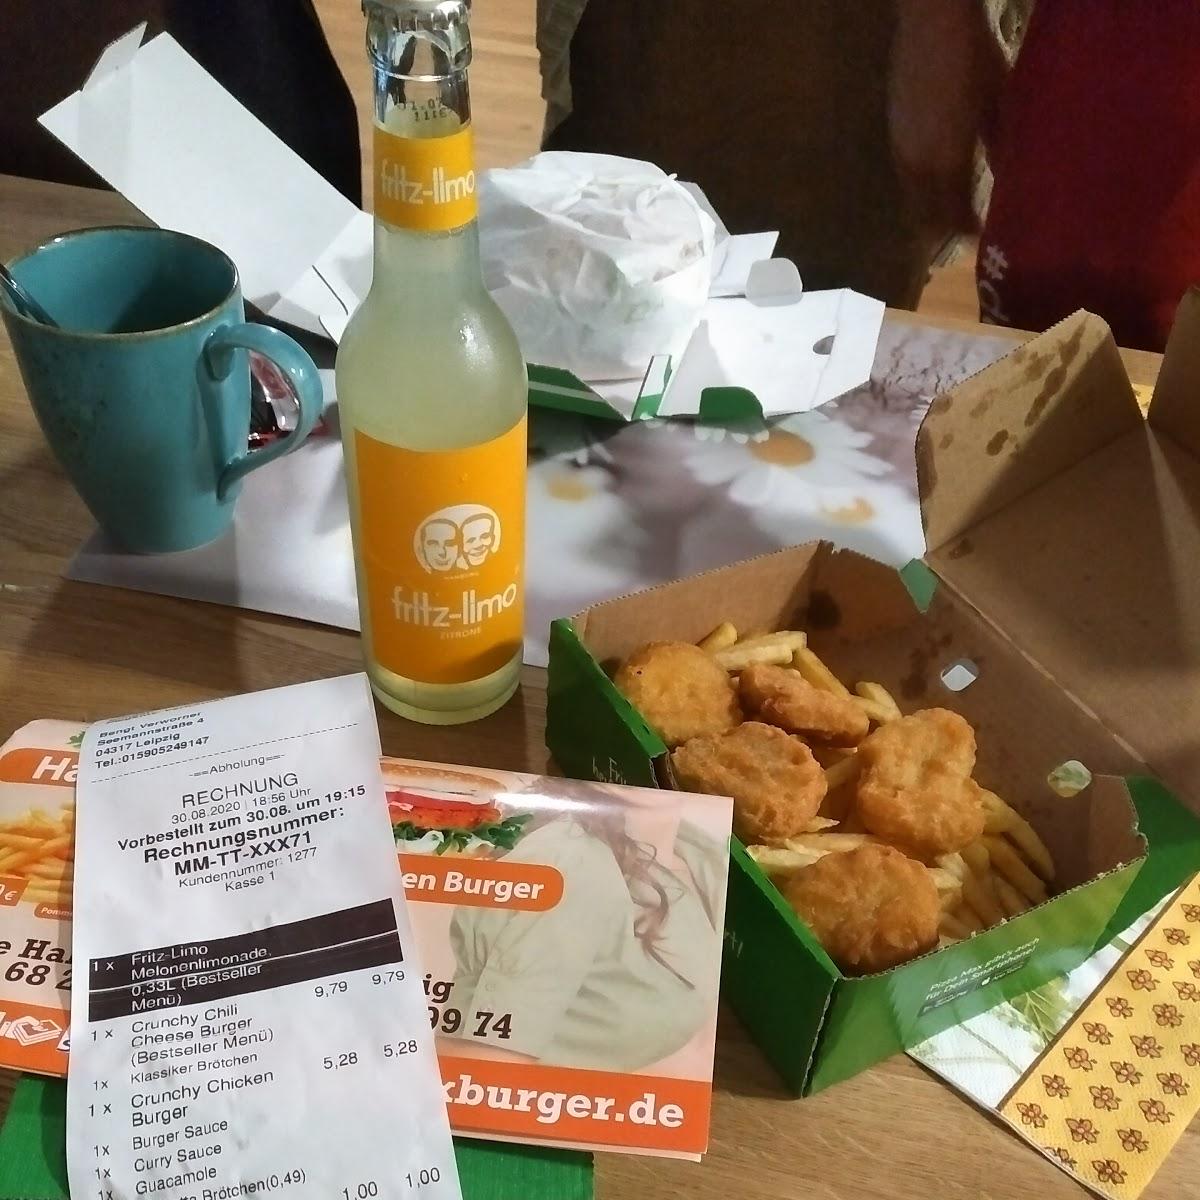 Restaurant "Burgermix" in Leipzig